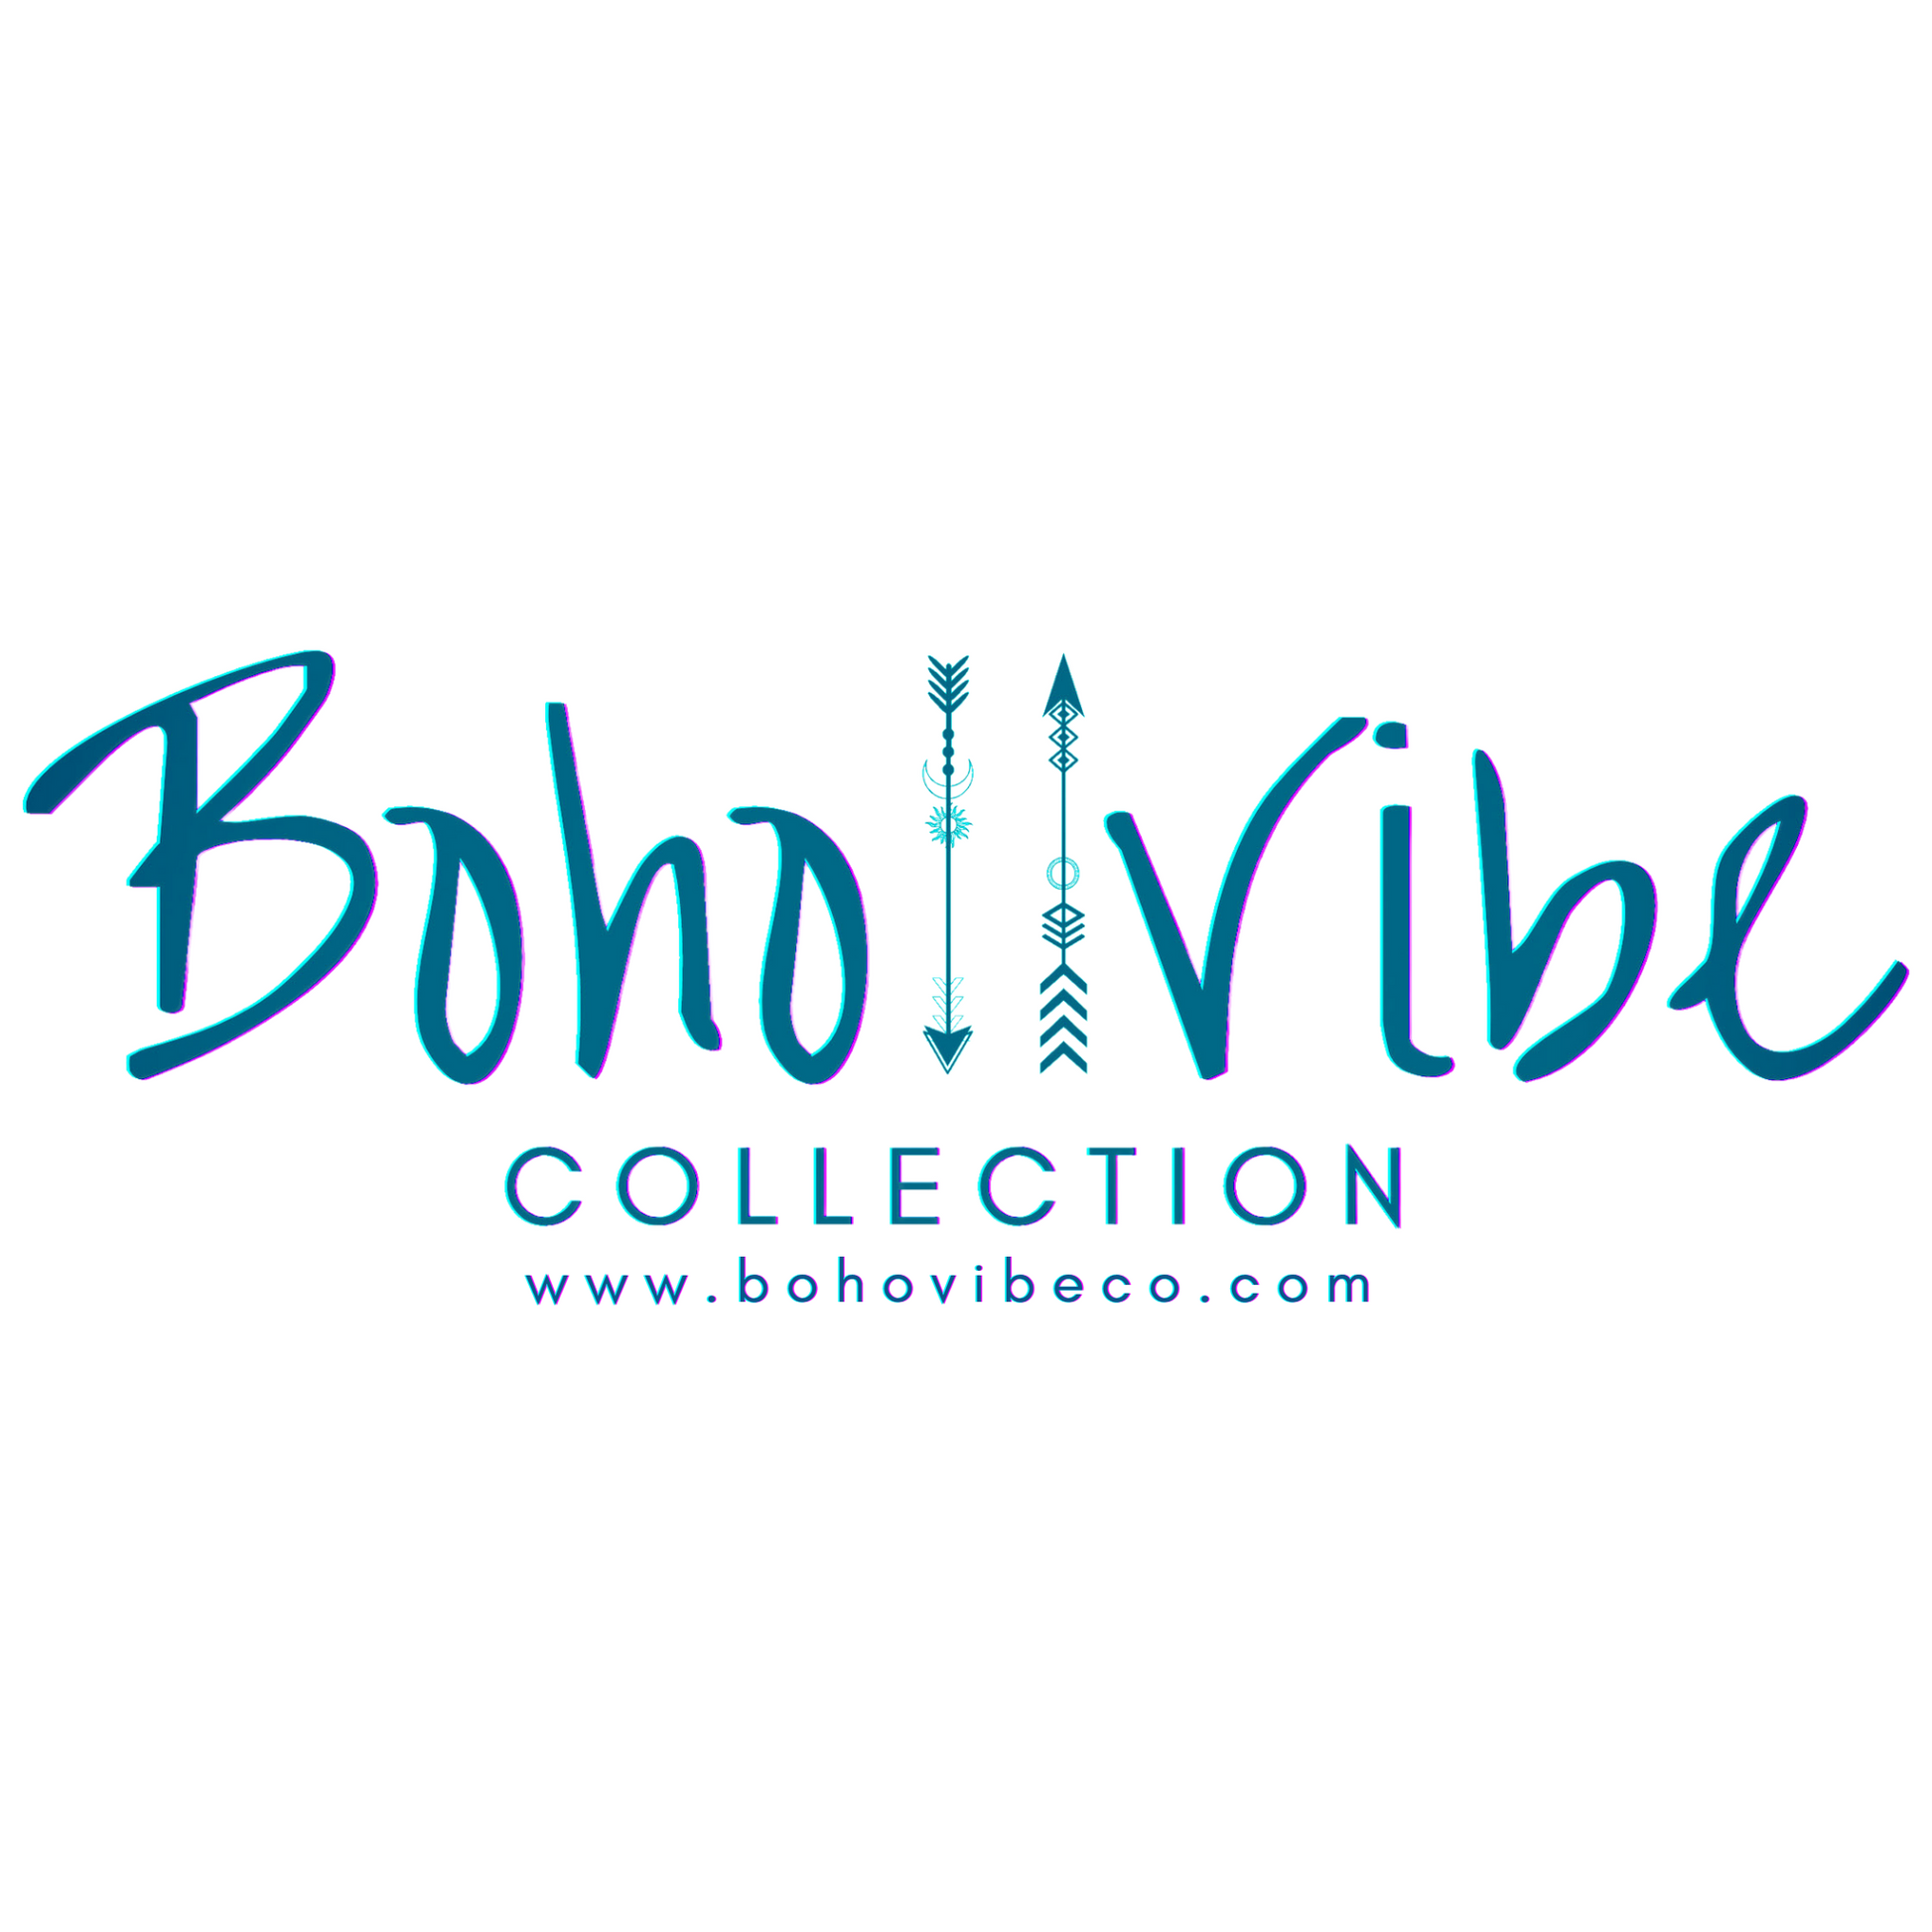 Boho ↡↟ Vibe Collection ↠ Natural Selenite Wand Raw Crystal Charging Tray 